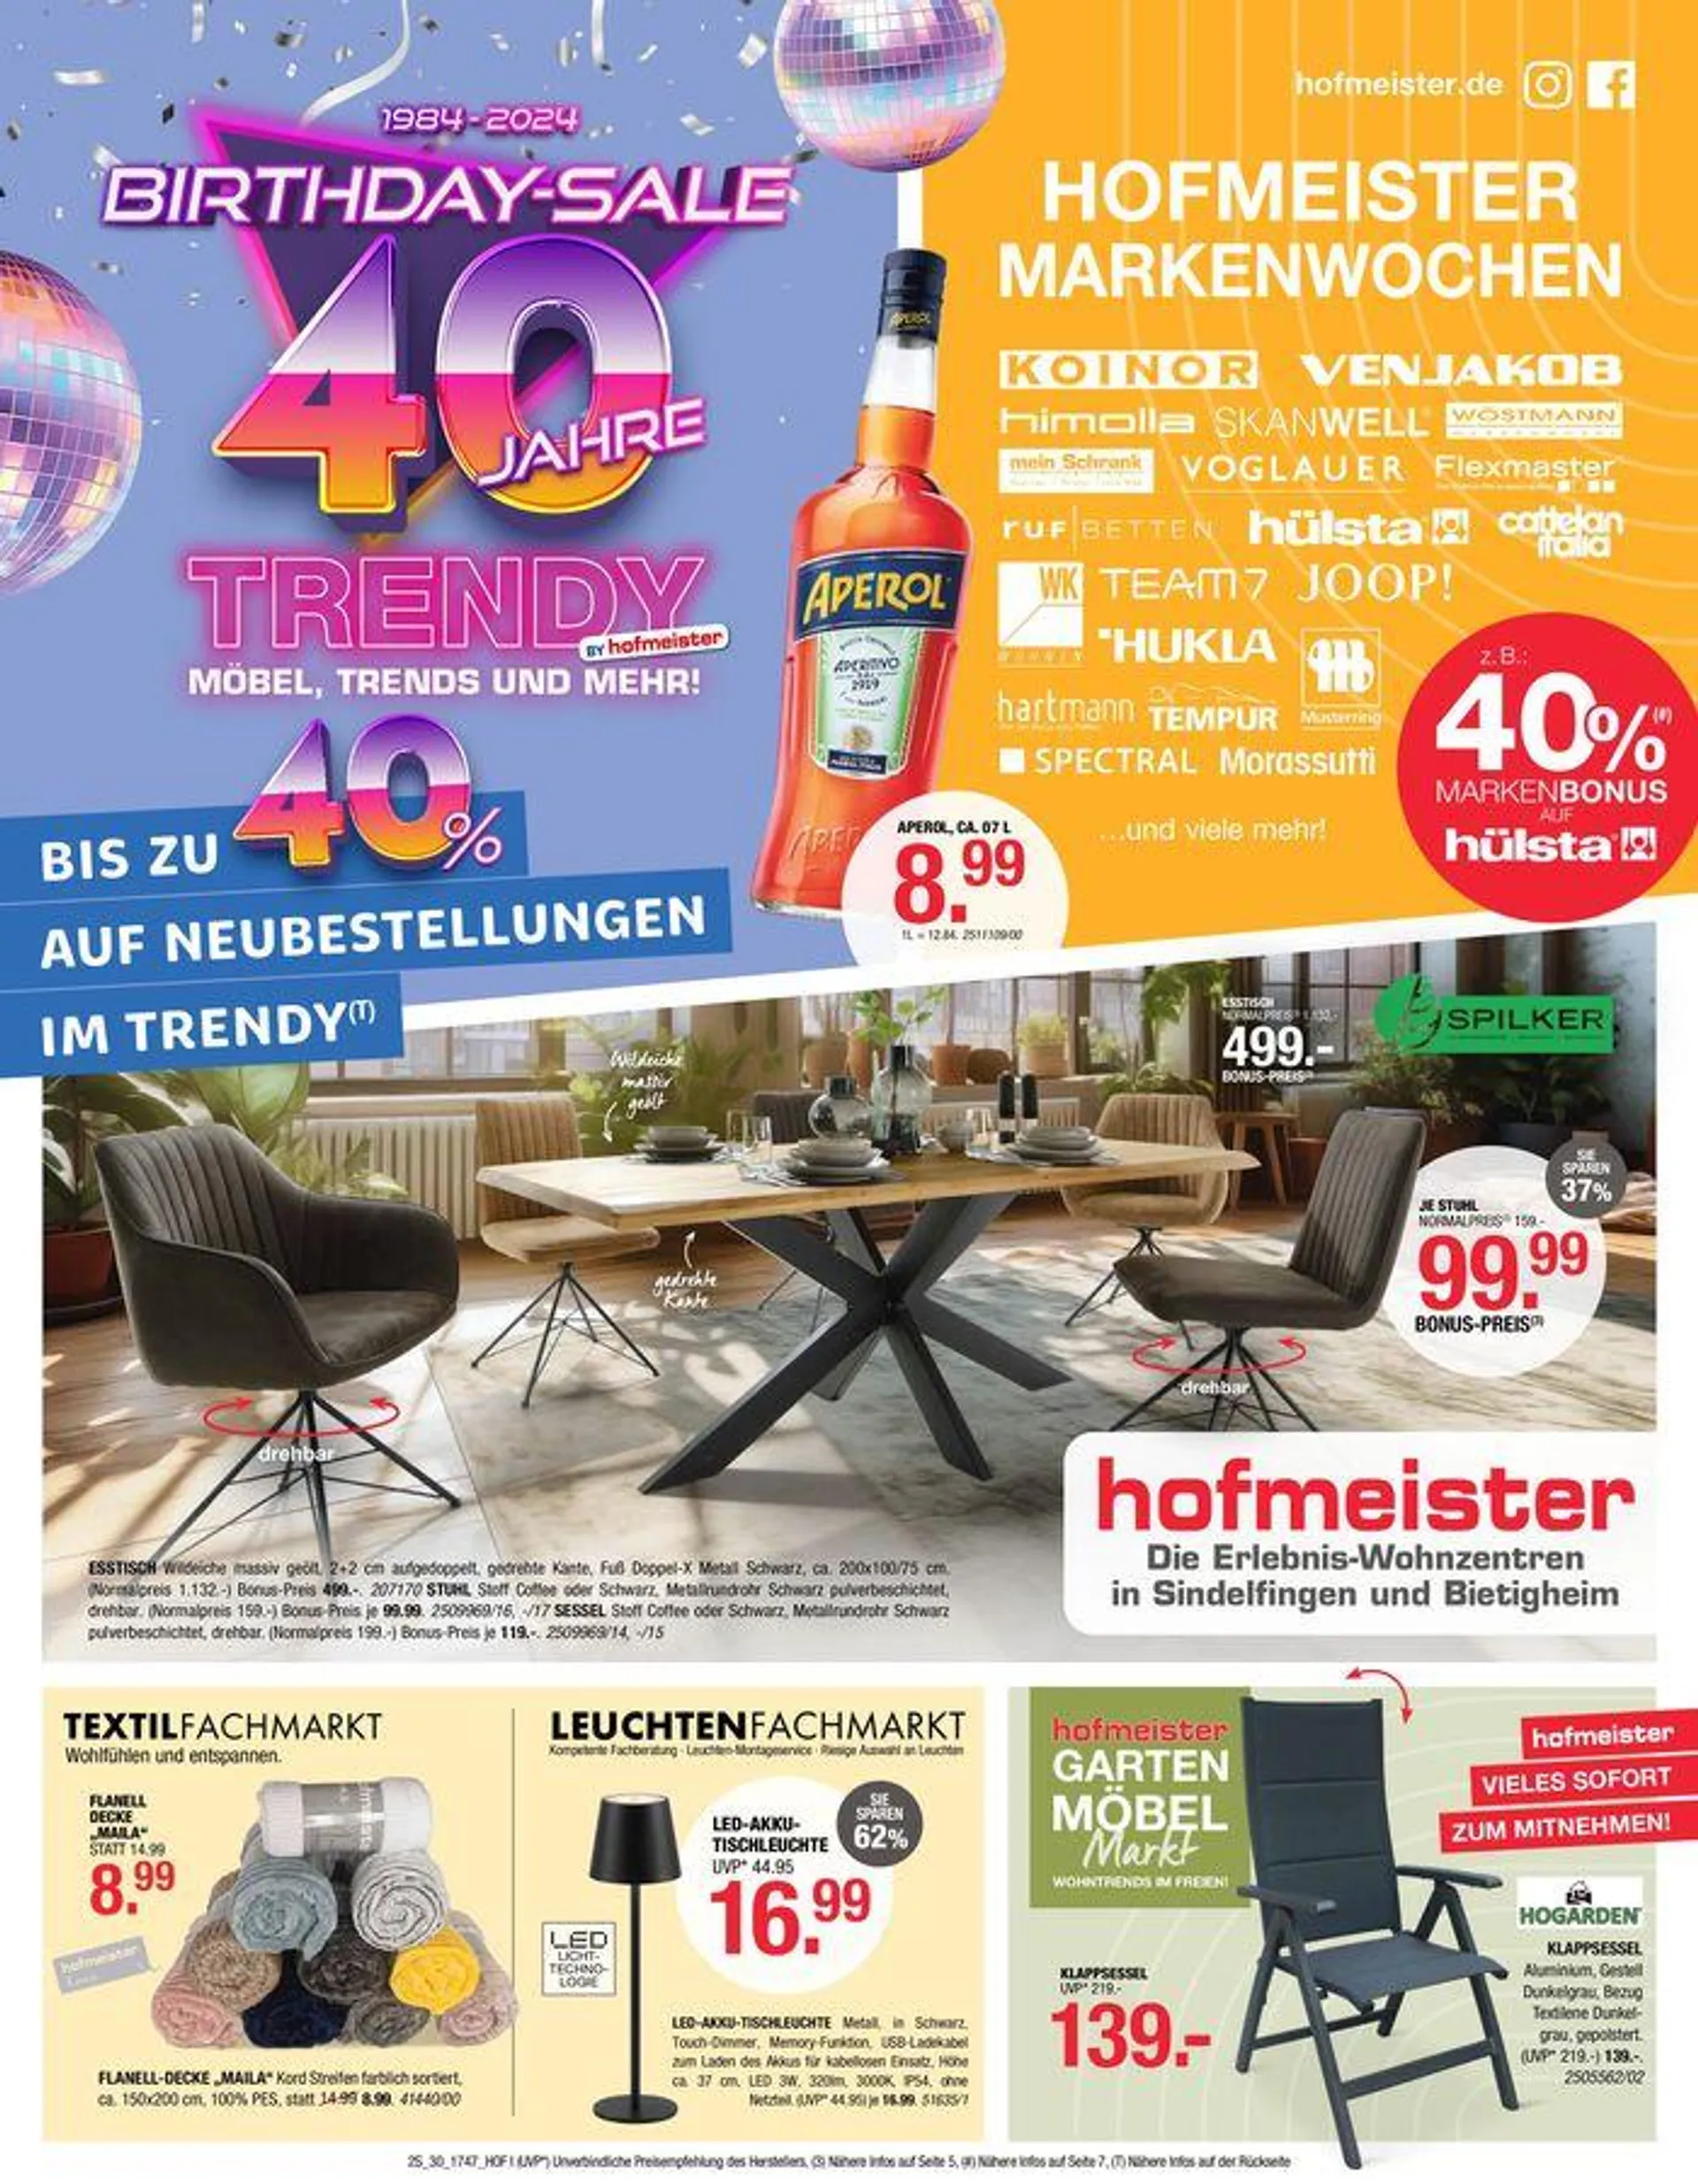 Hofmeister Markenwochen 40 Jahre Trendy - 1